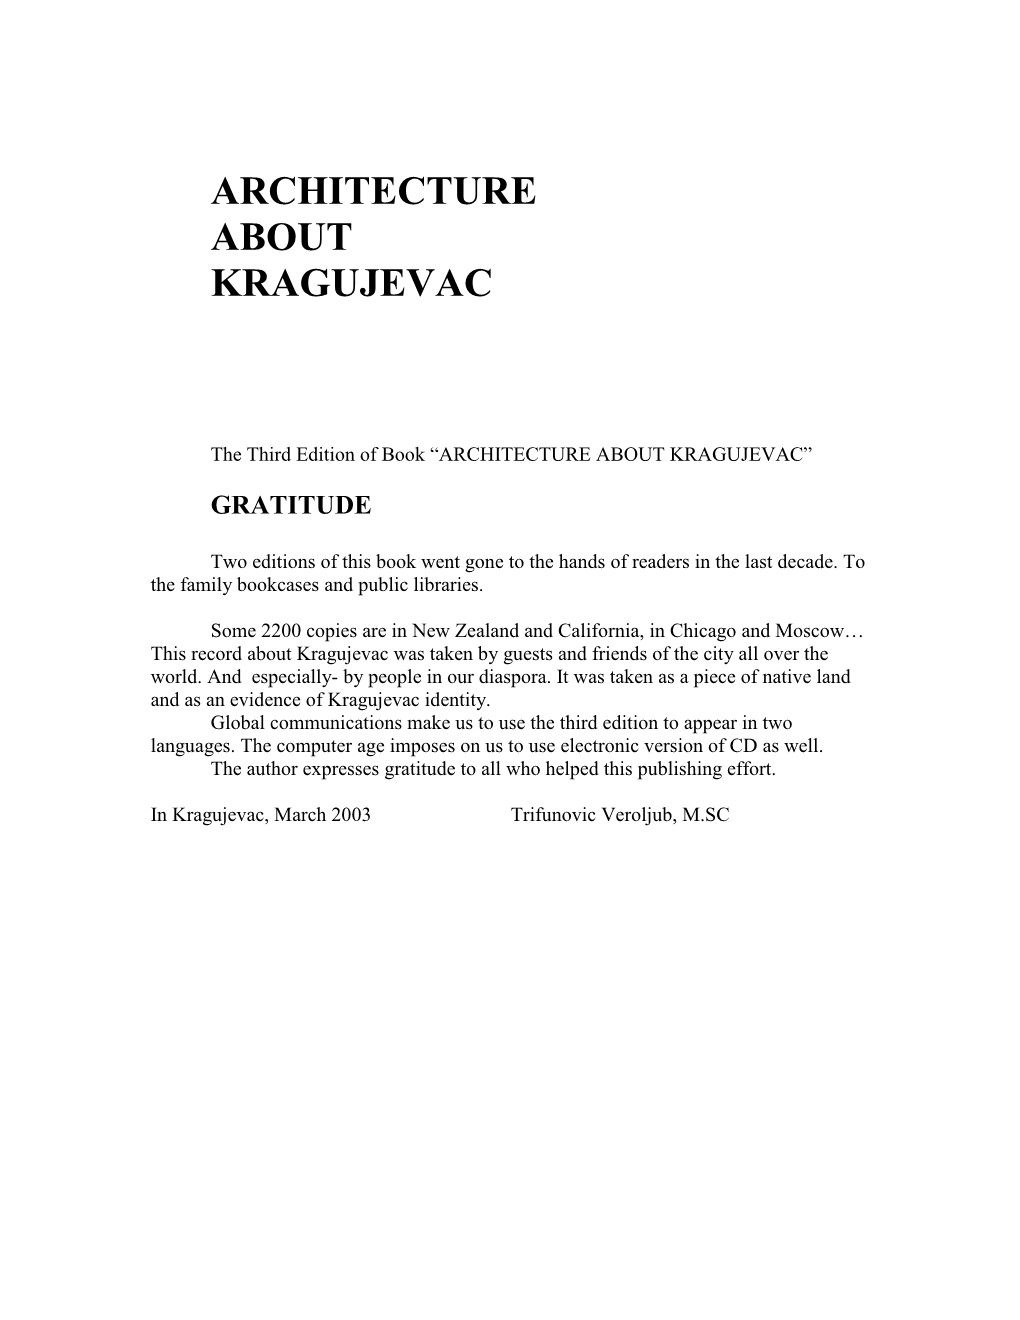 Architecture About Kragujevac